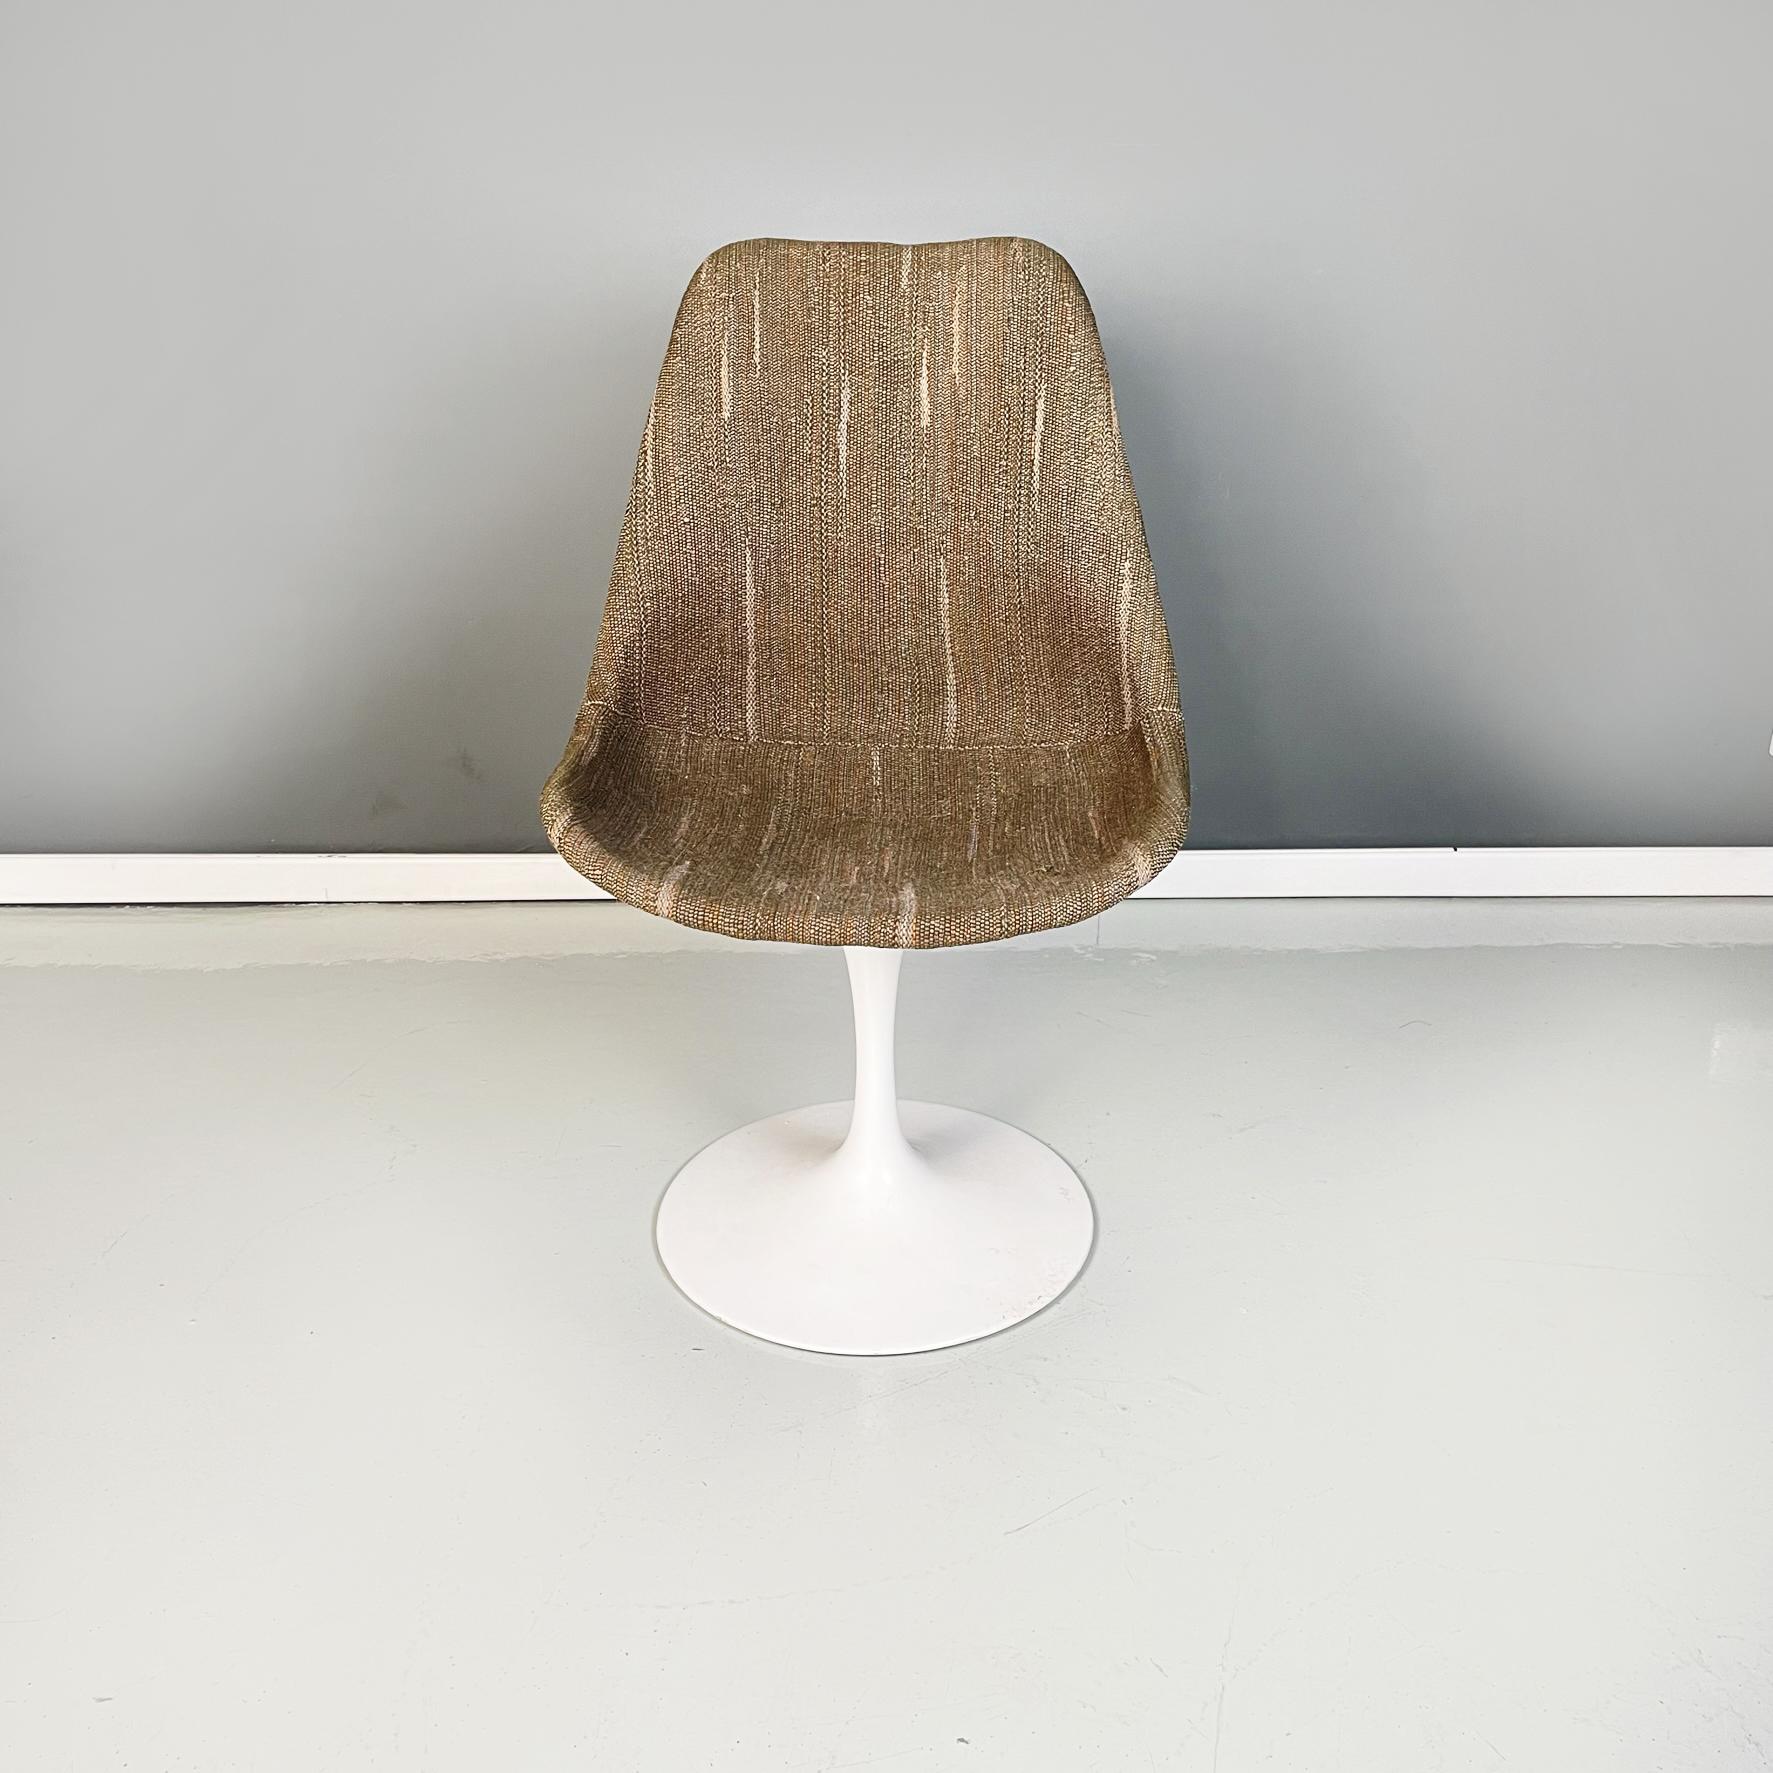 Fauteuil Tulip en tissu brun de l'ère spatiale américaine par Eero Saarinen pour Knoll, années 1970
Iconique et élégante chaise sans accoudoir Tulip avec base ronde en métal peint en blanc. L'assise et le dossier ont une structure en plastique abs